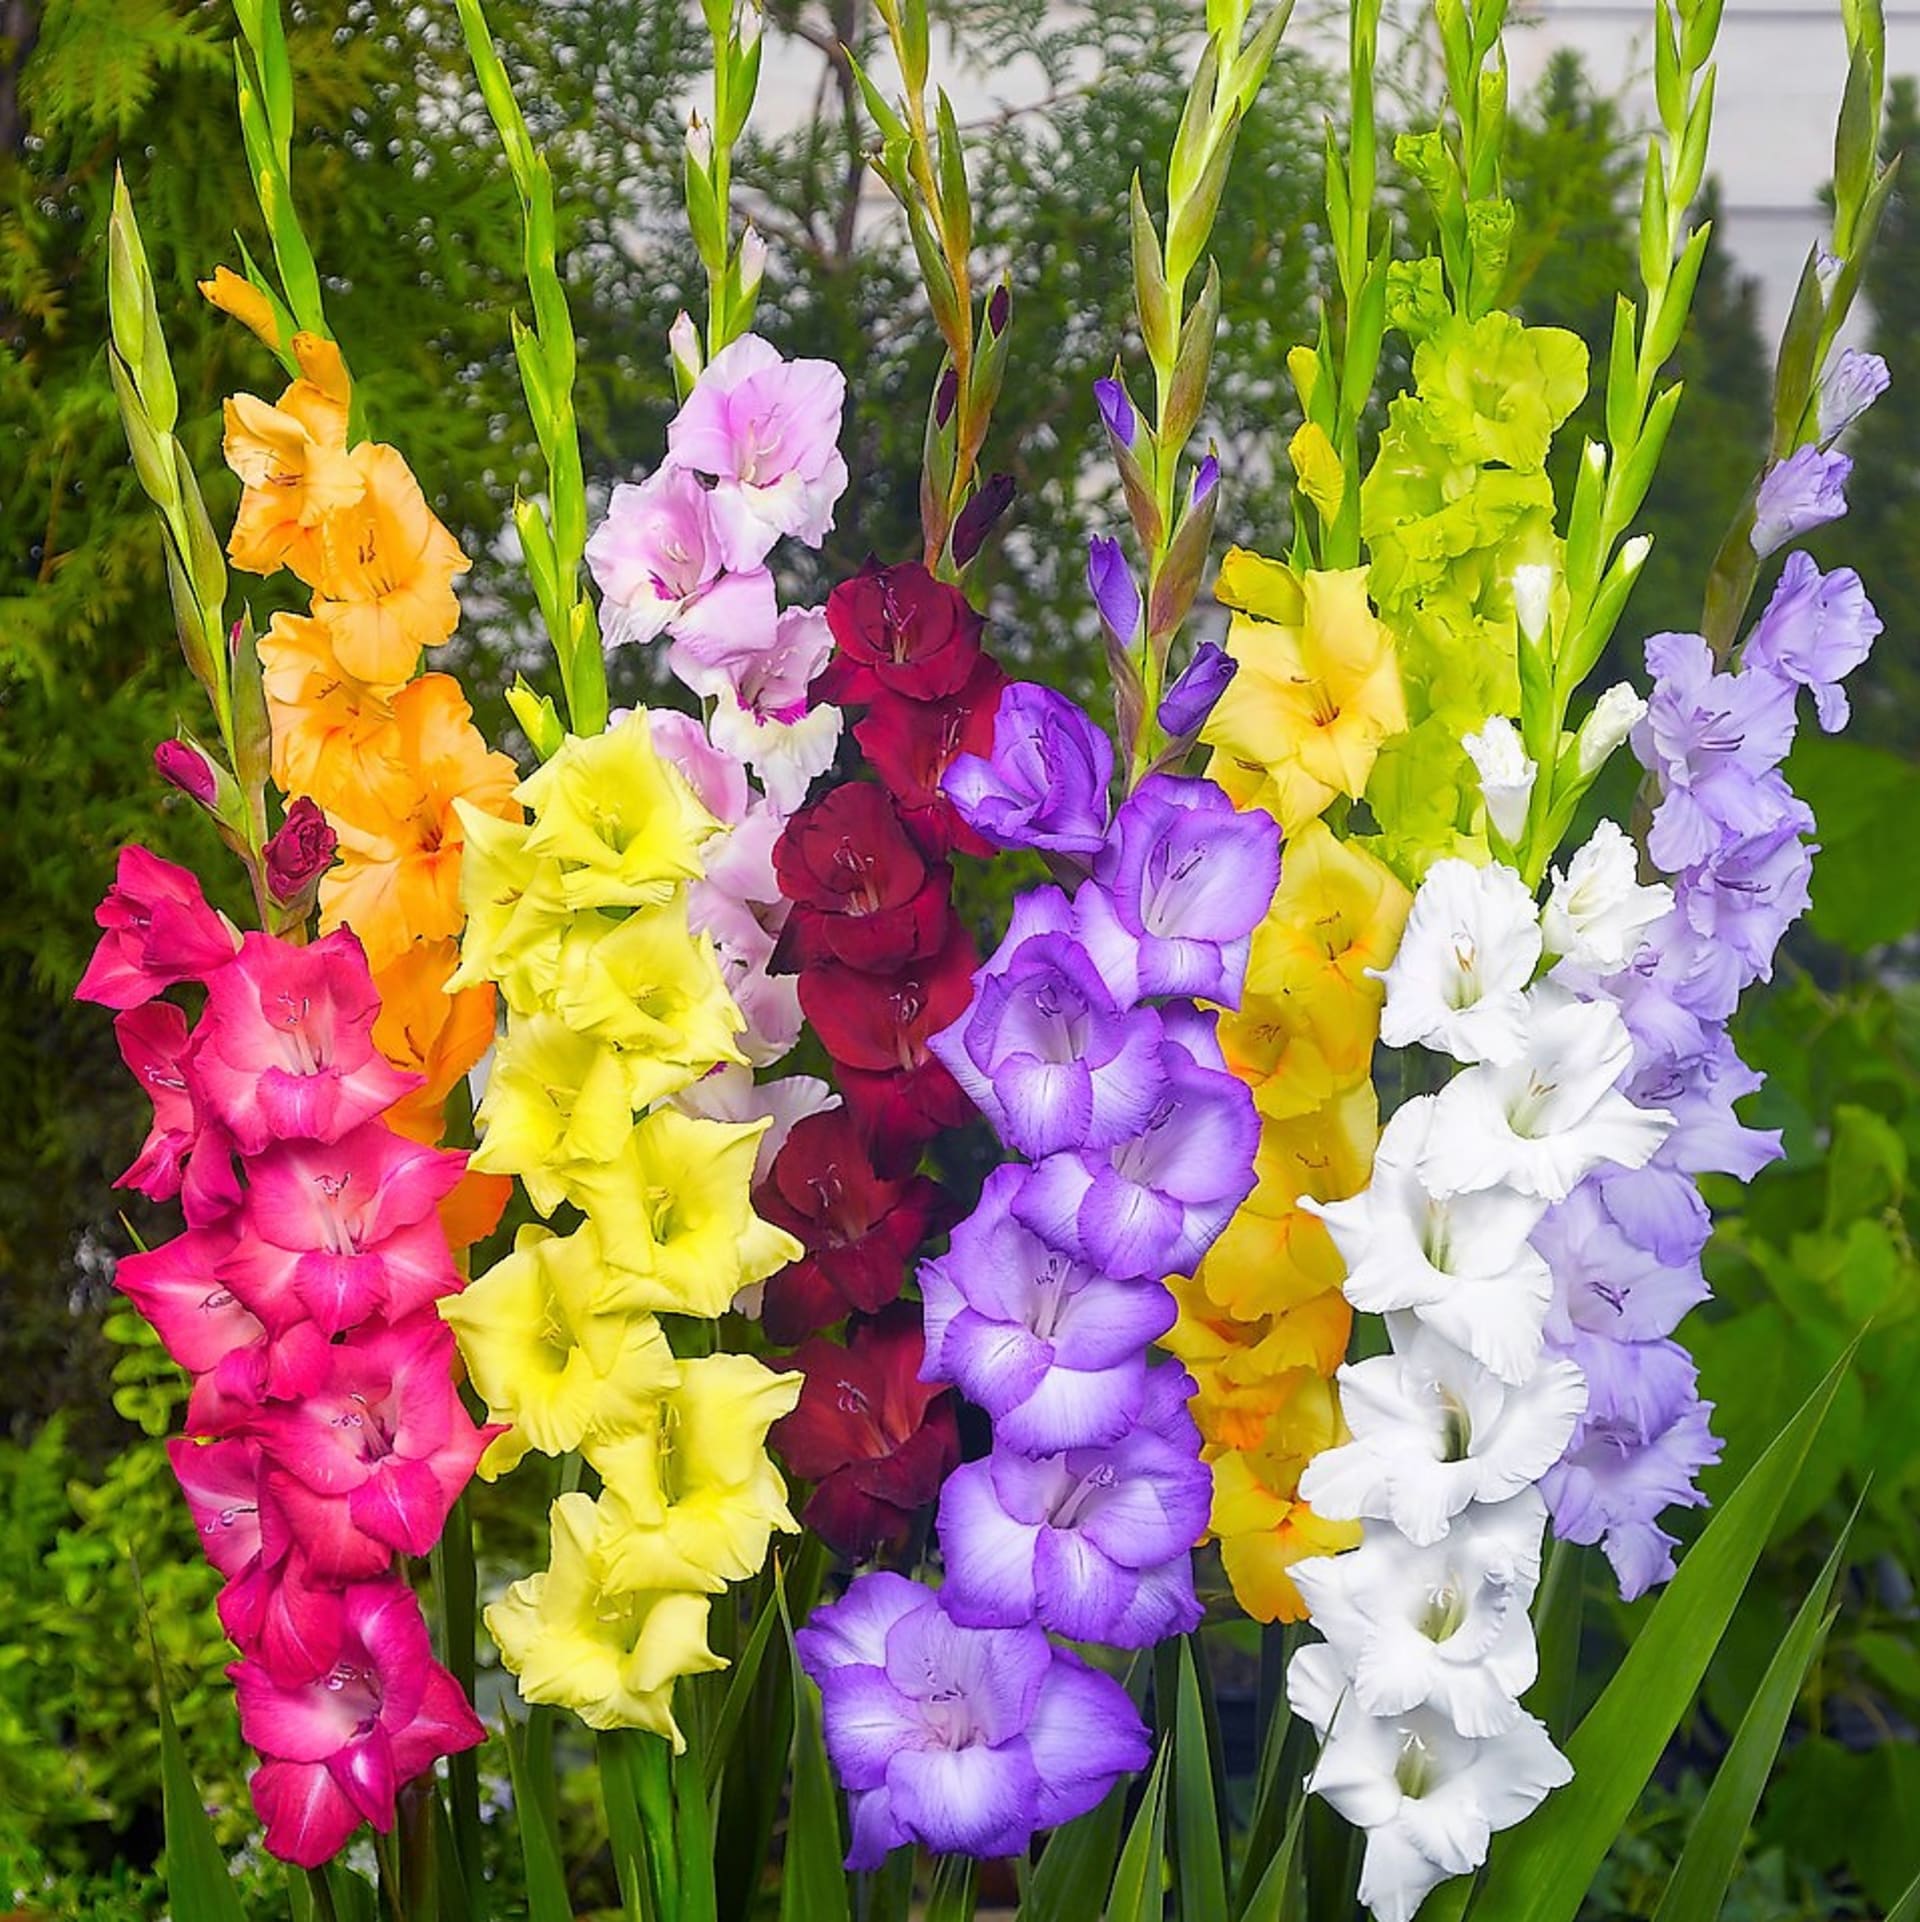 Mečíky (Gladiolus) jsou cibulové hlízy sázíme je jaře a kvetou v létě.